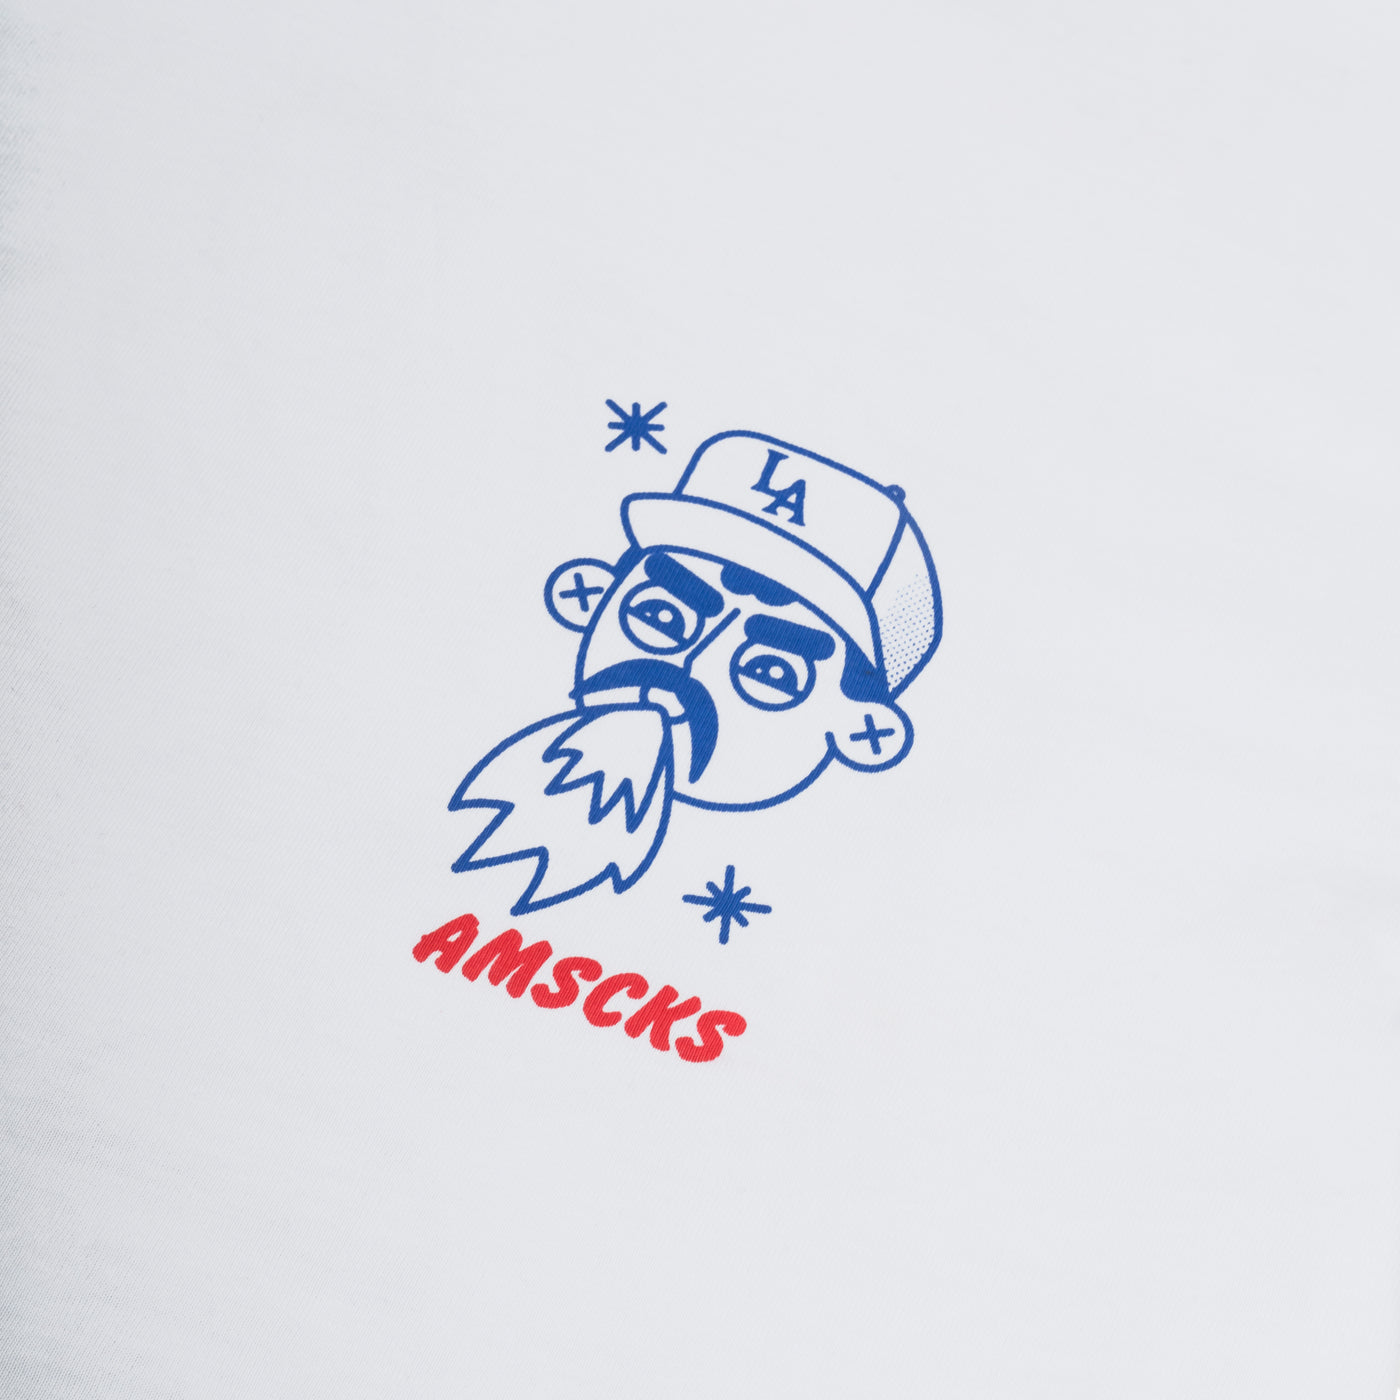 Tacos & Vatos - T-Shirt